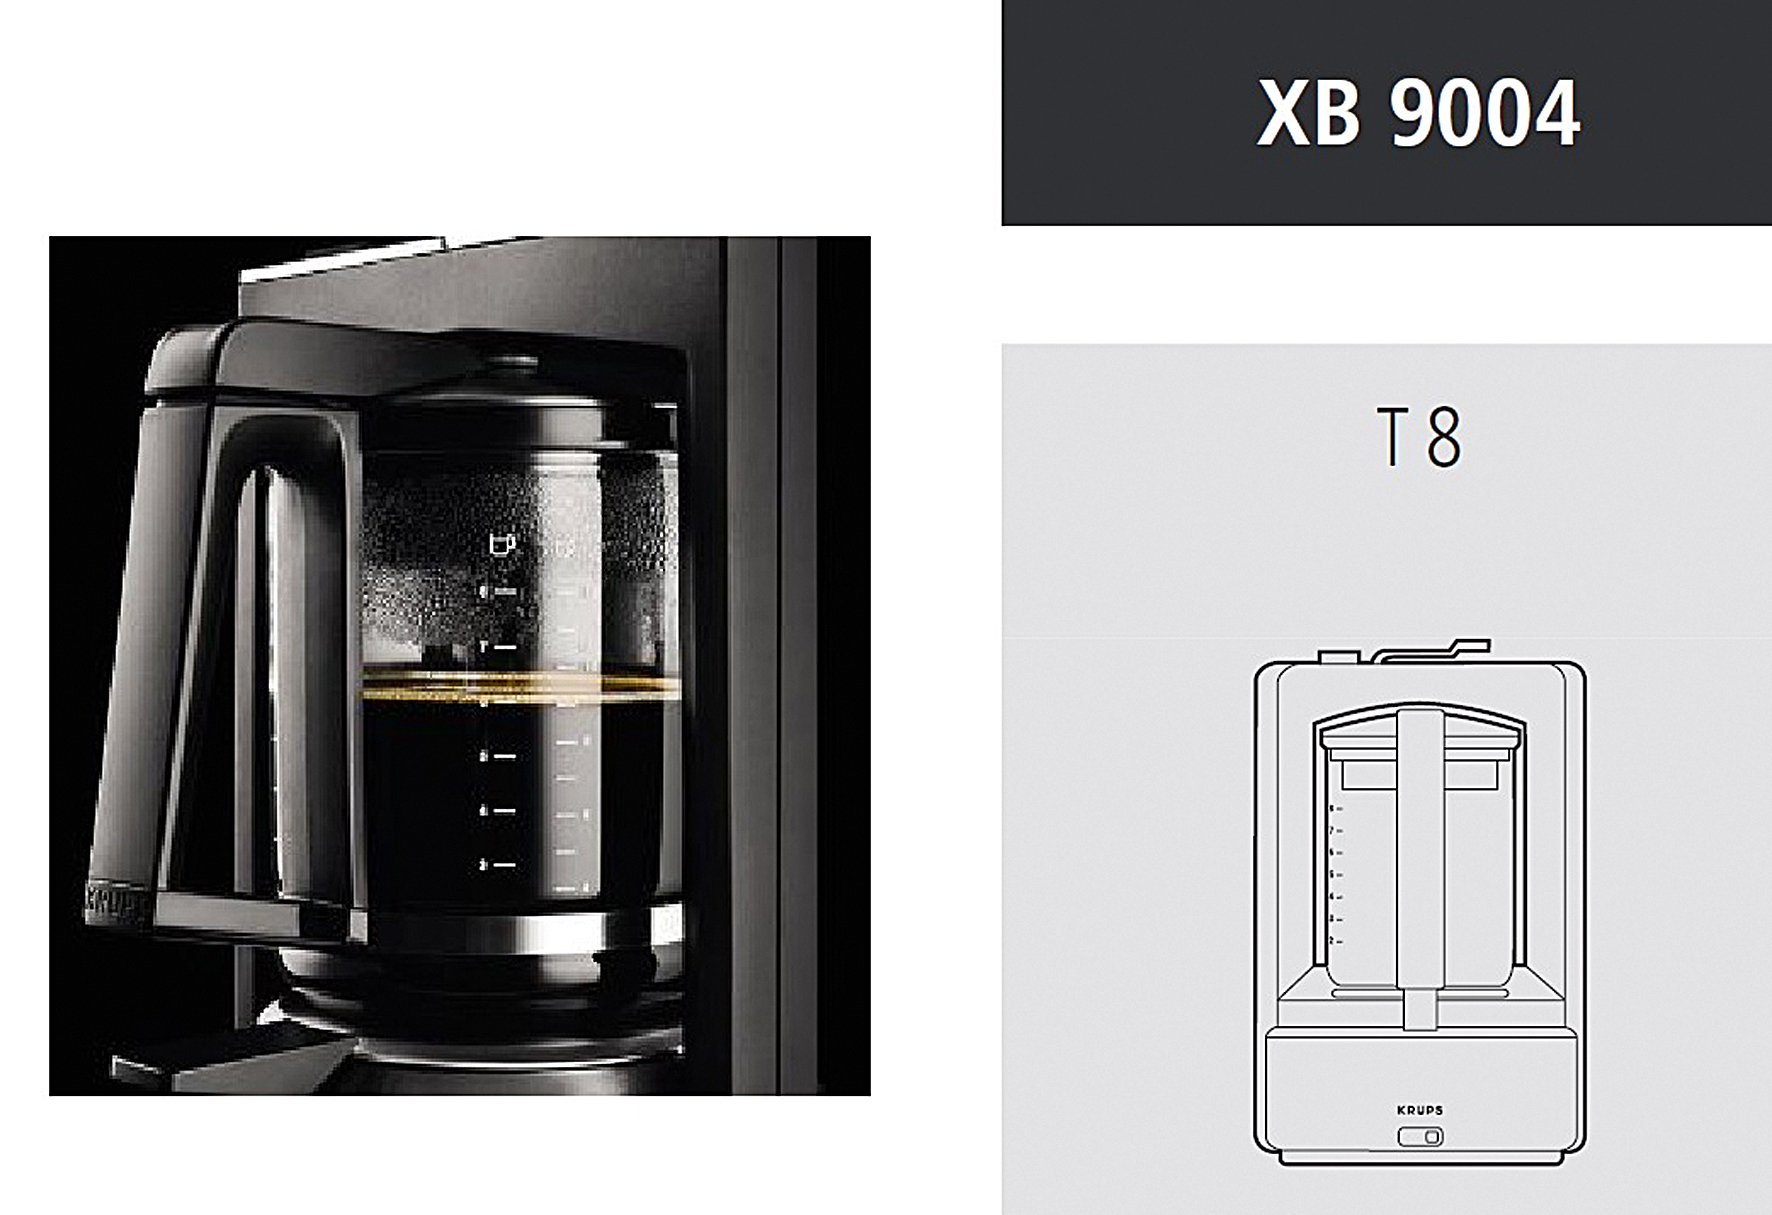 KRUPS Ersatzkrug XB 9004 passend zu T8.3 neu, Lieferung ohne Deckel schwarz